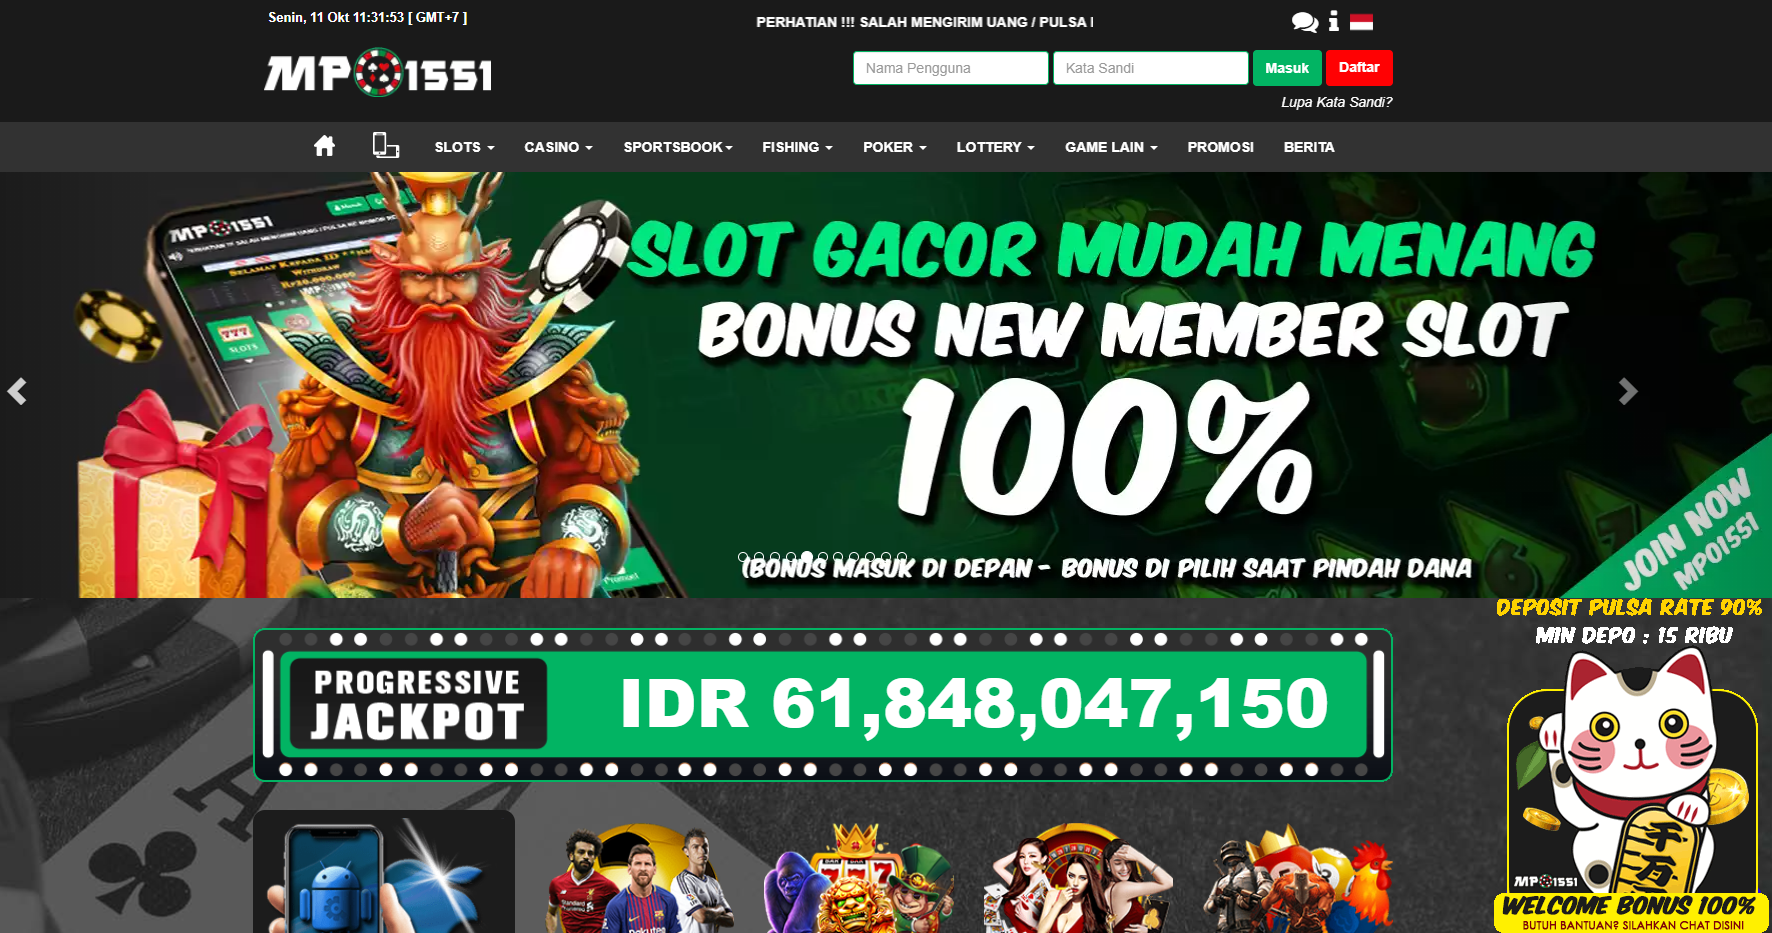 MPO1551 Situs Judi Slot Online Pragmatic Deposit Dana Terbaru